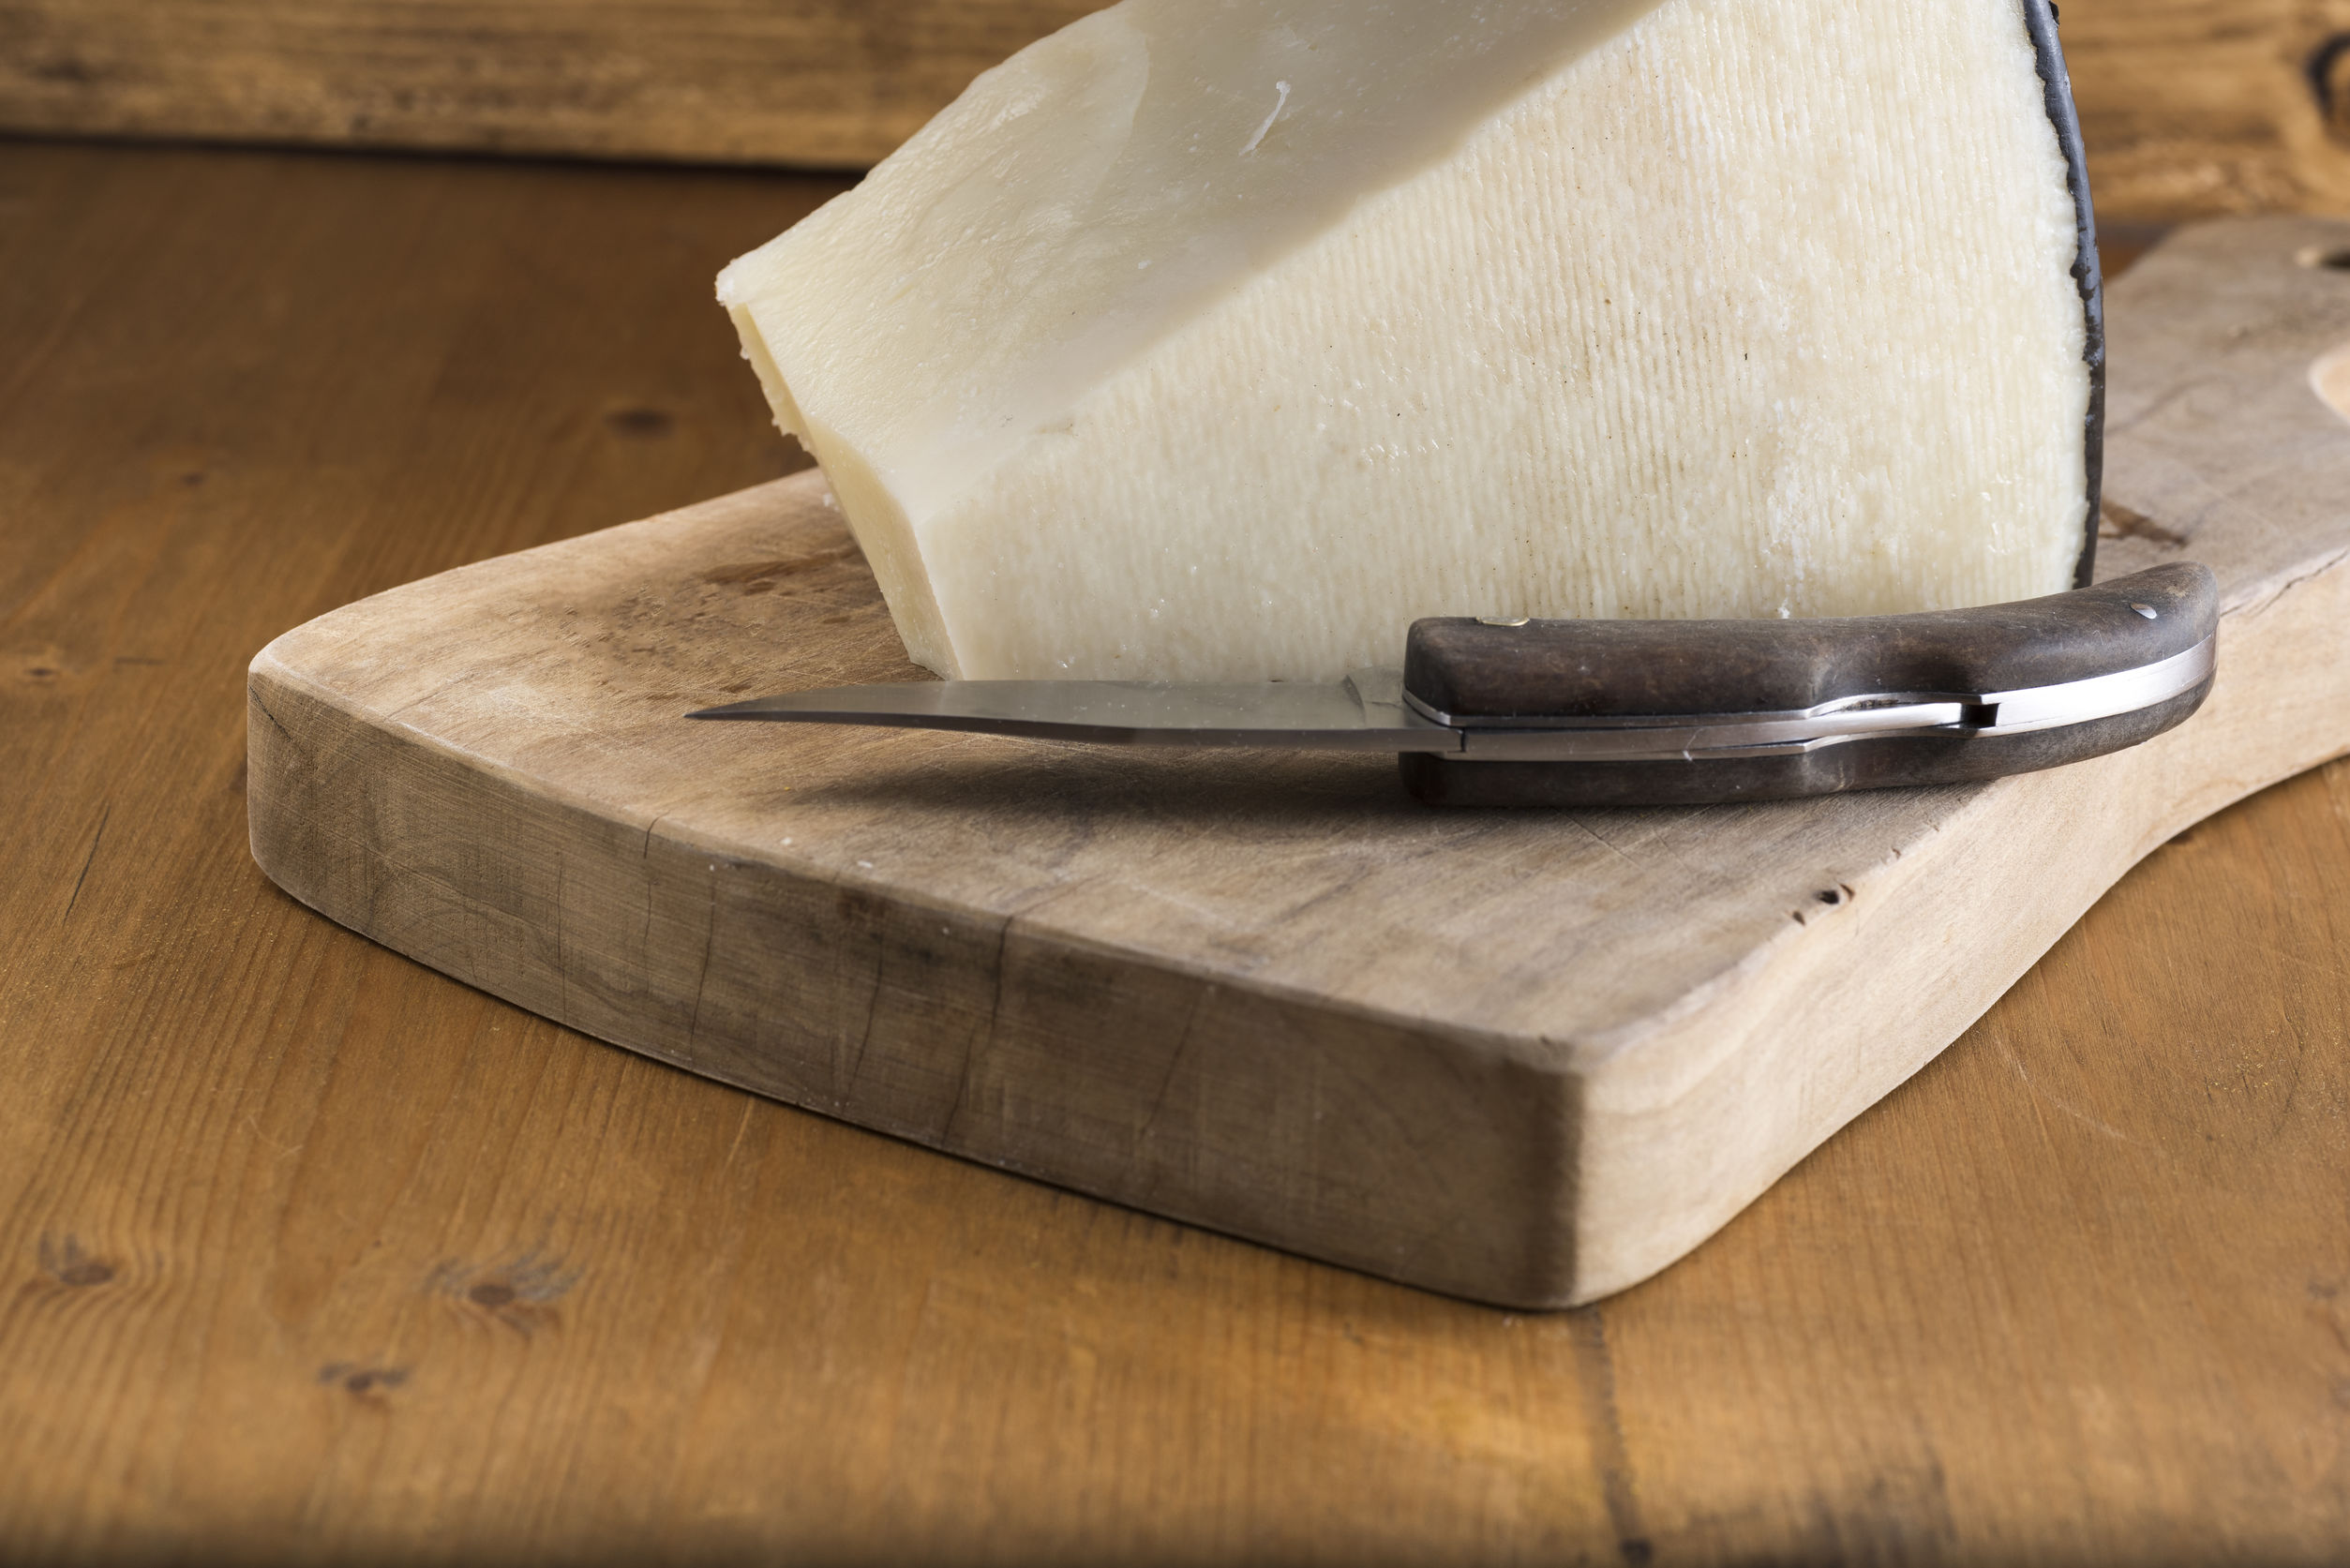 Pecorino Romano cheese